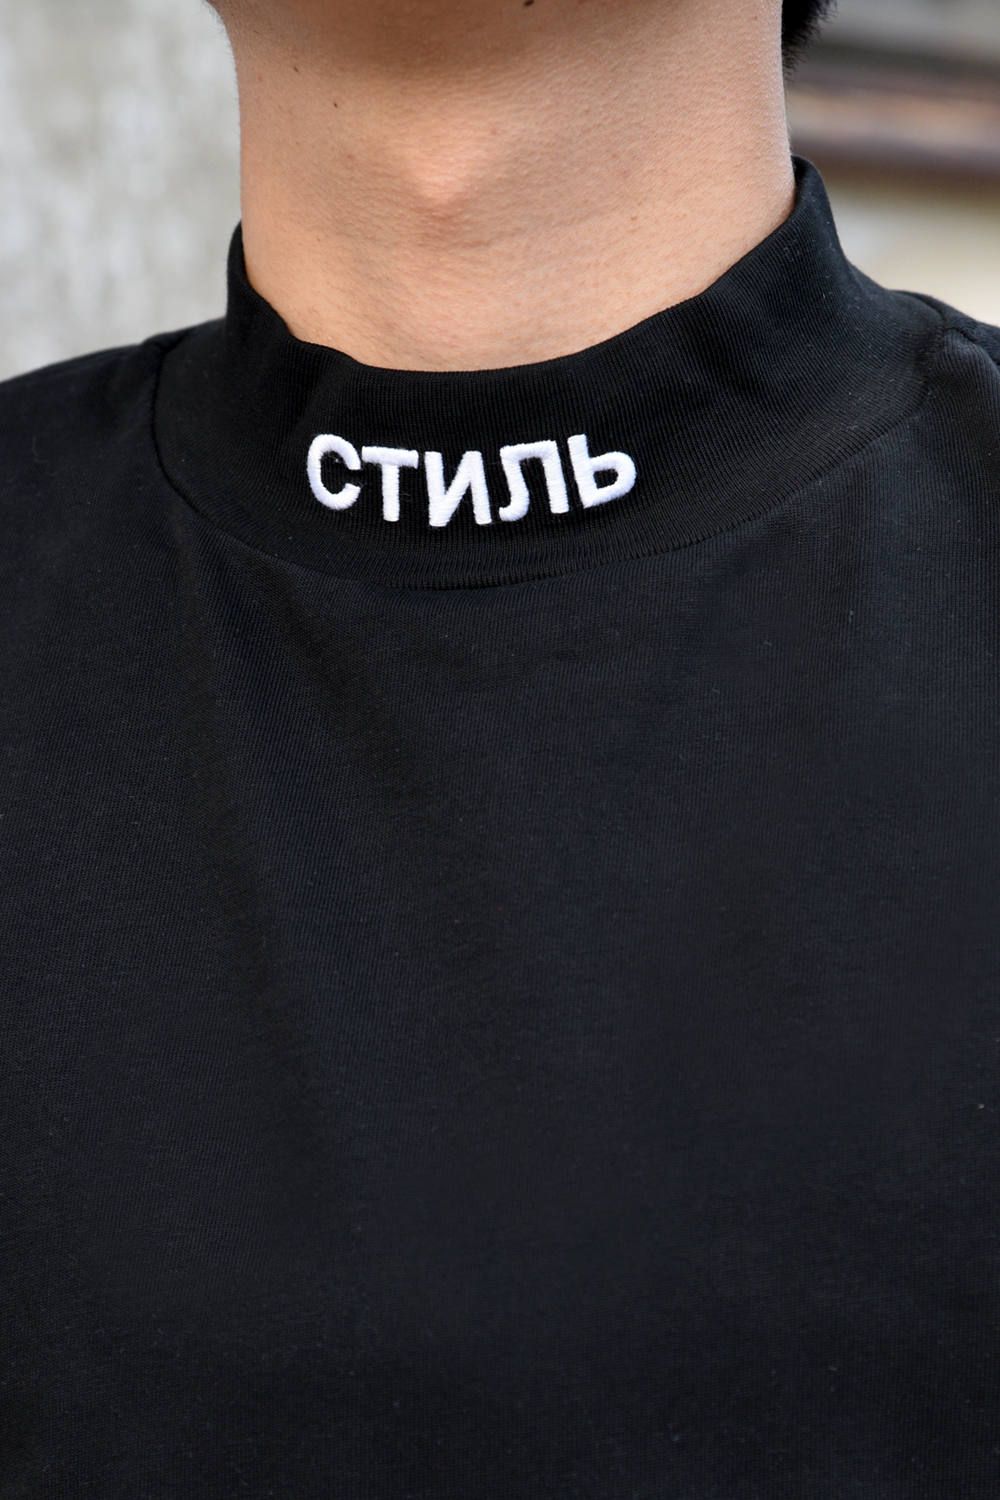 CTNMB TURTLE-NECK LS T-SHIRT / タートルネック ロングスリーブ Tシャツ ブラック - XXS